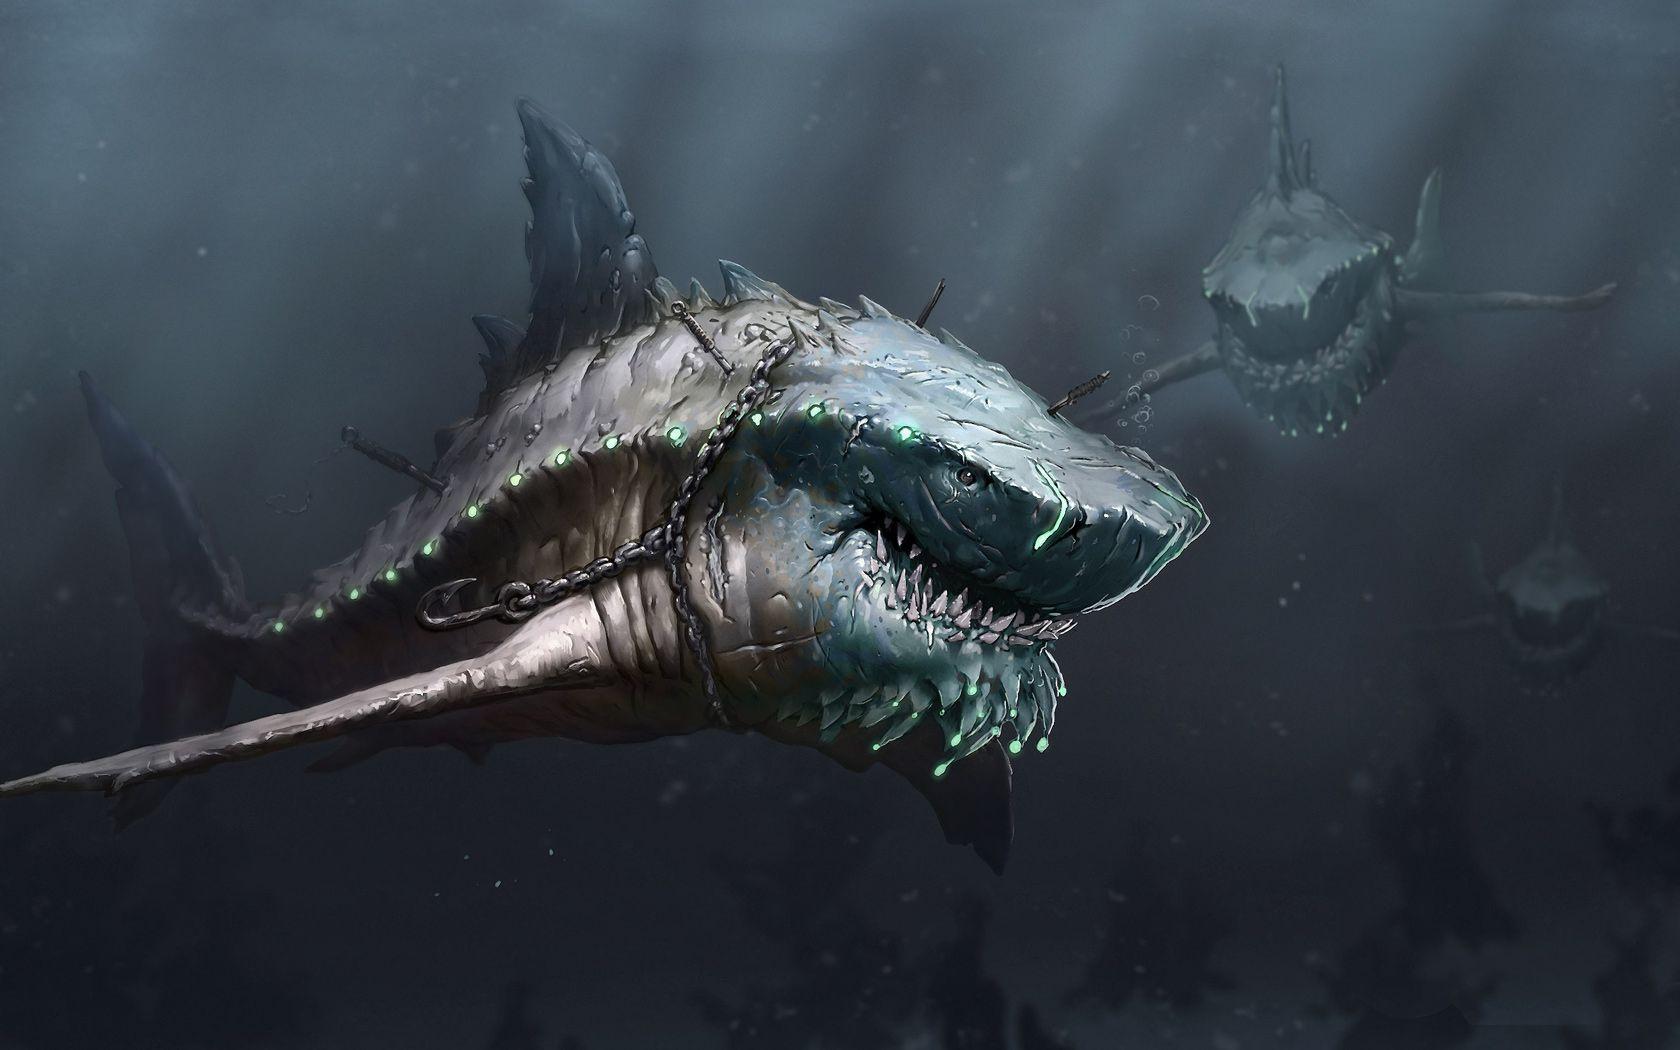 Drawn Deep Sea Shark Monster. HD Wallpaper. Deep